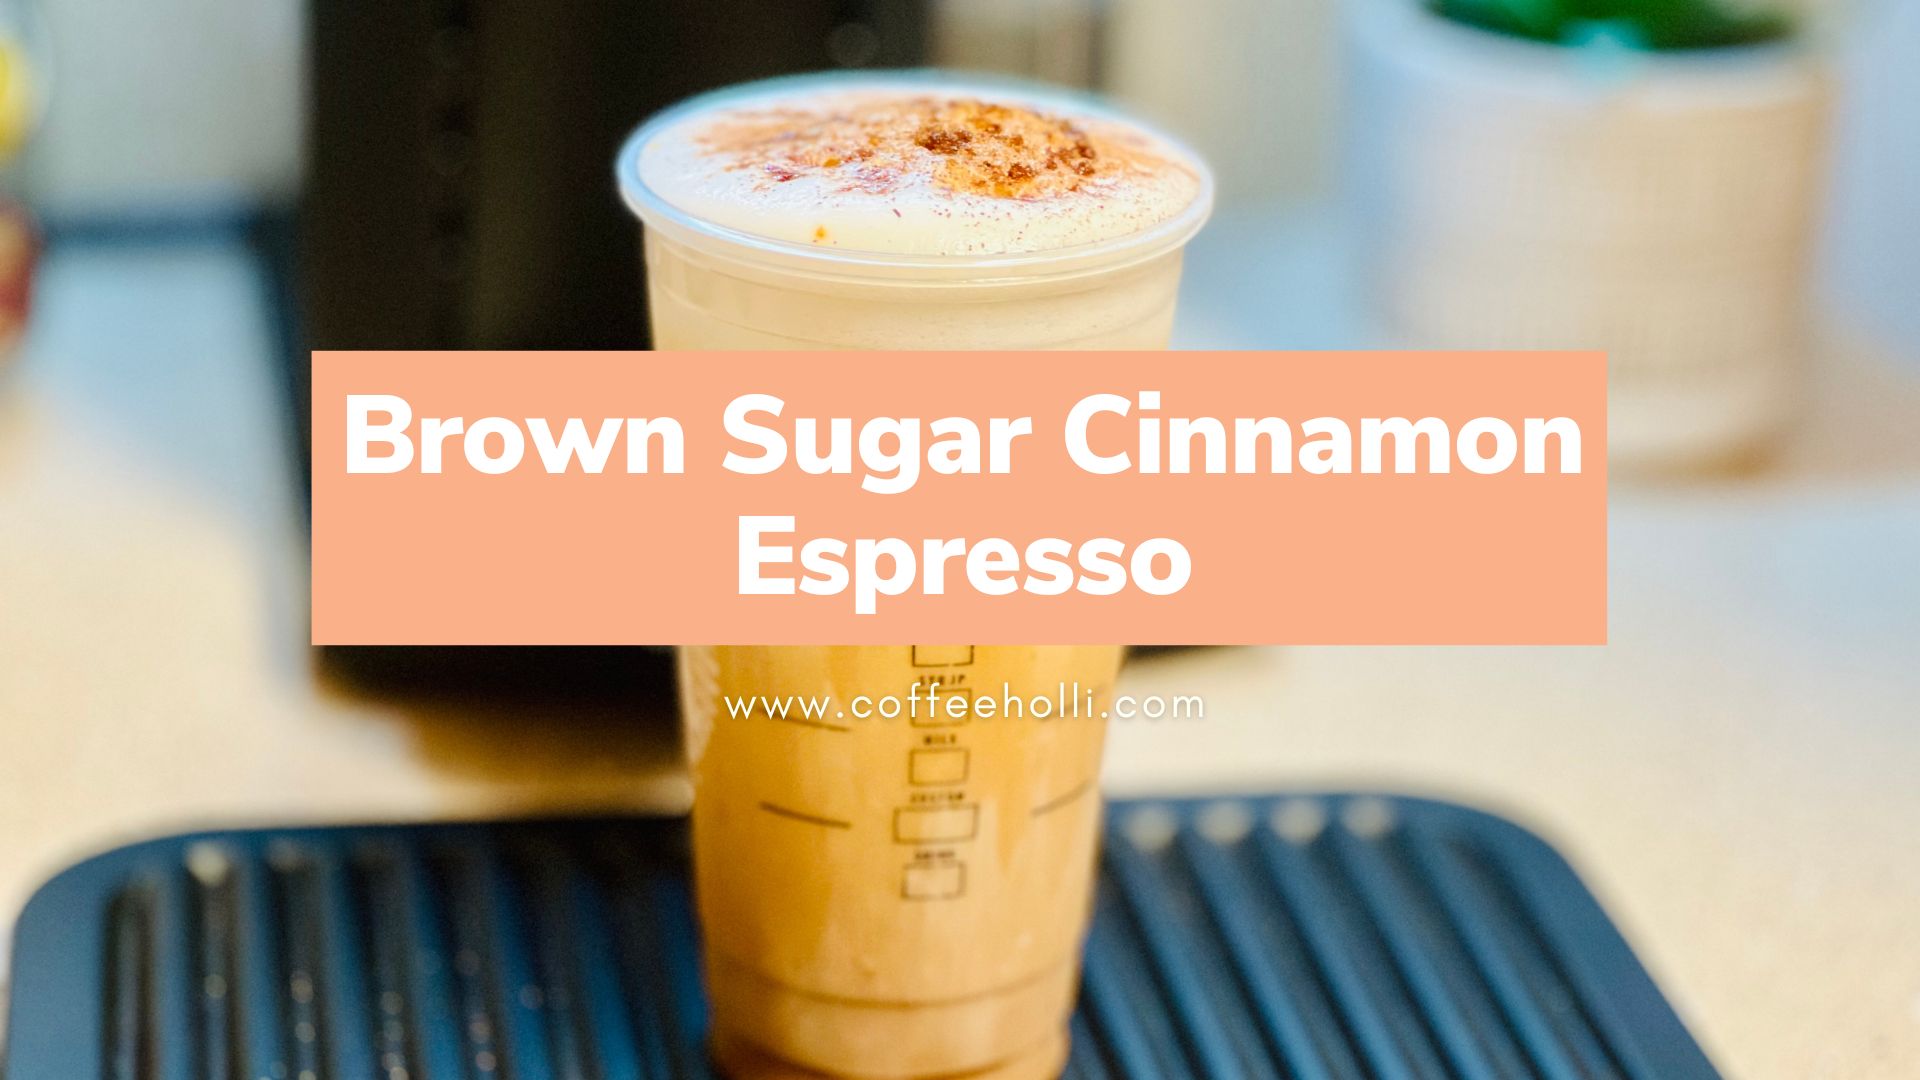 Brown Sugar Cinnamon Espresso